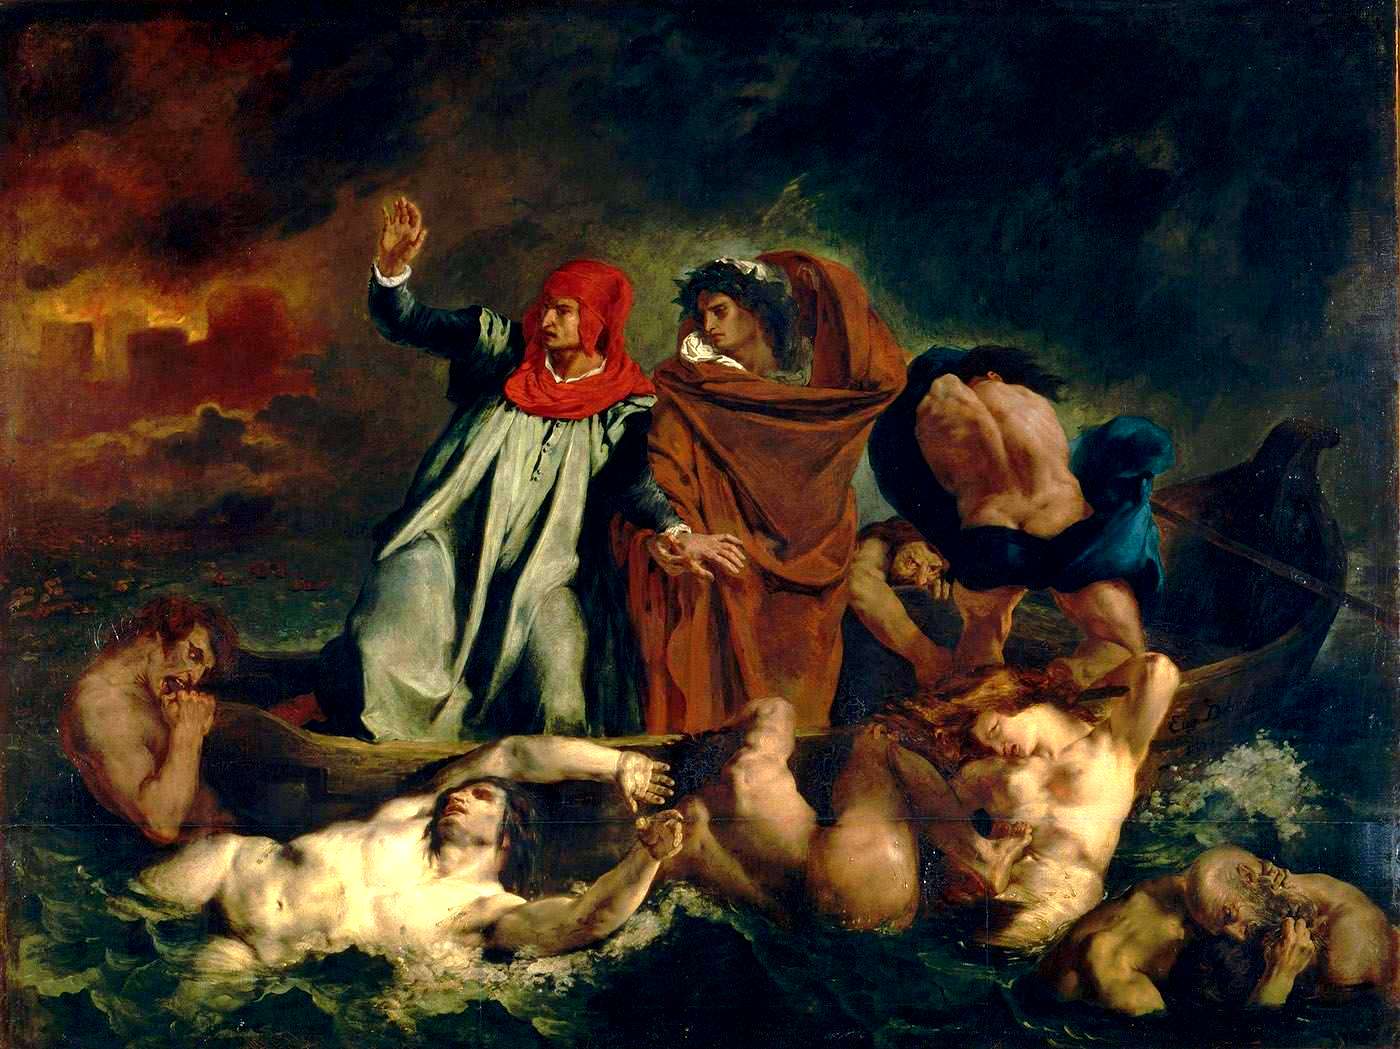 Eugène_Ferdinand_Victor_Delacroix-La Barque de Dante - Charles Baudelaire - les fleurs du mal